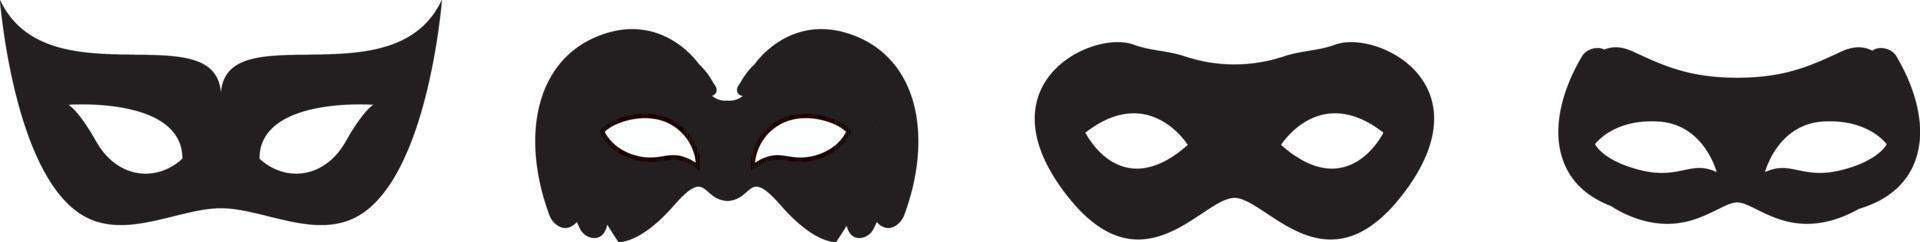 schwarze Maske Vektor Icon-Sammlung. verschiedene Masken Silhouette auf weißem Hintergrund